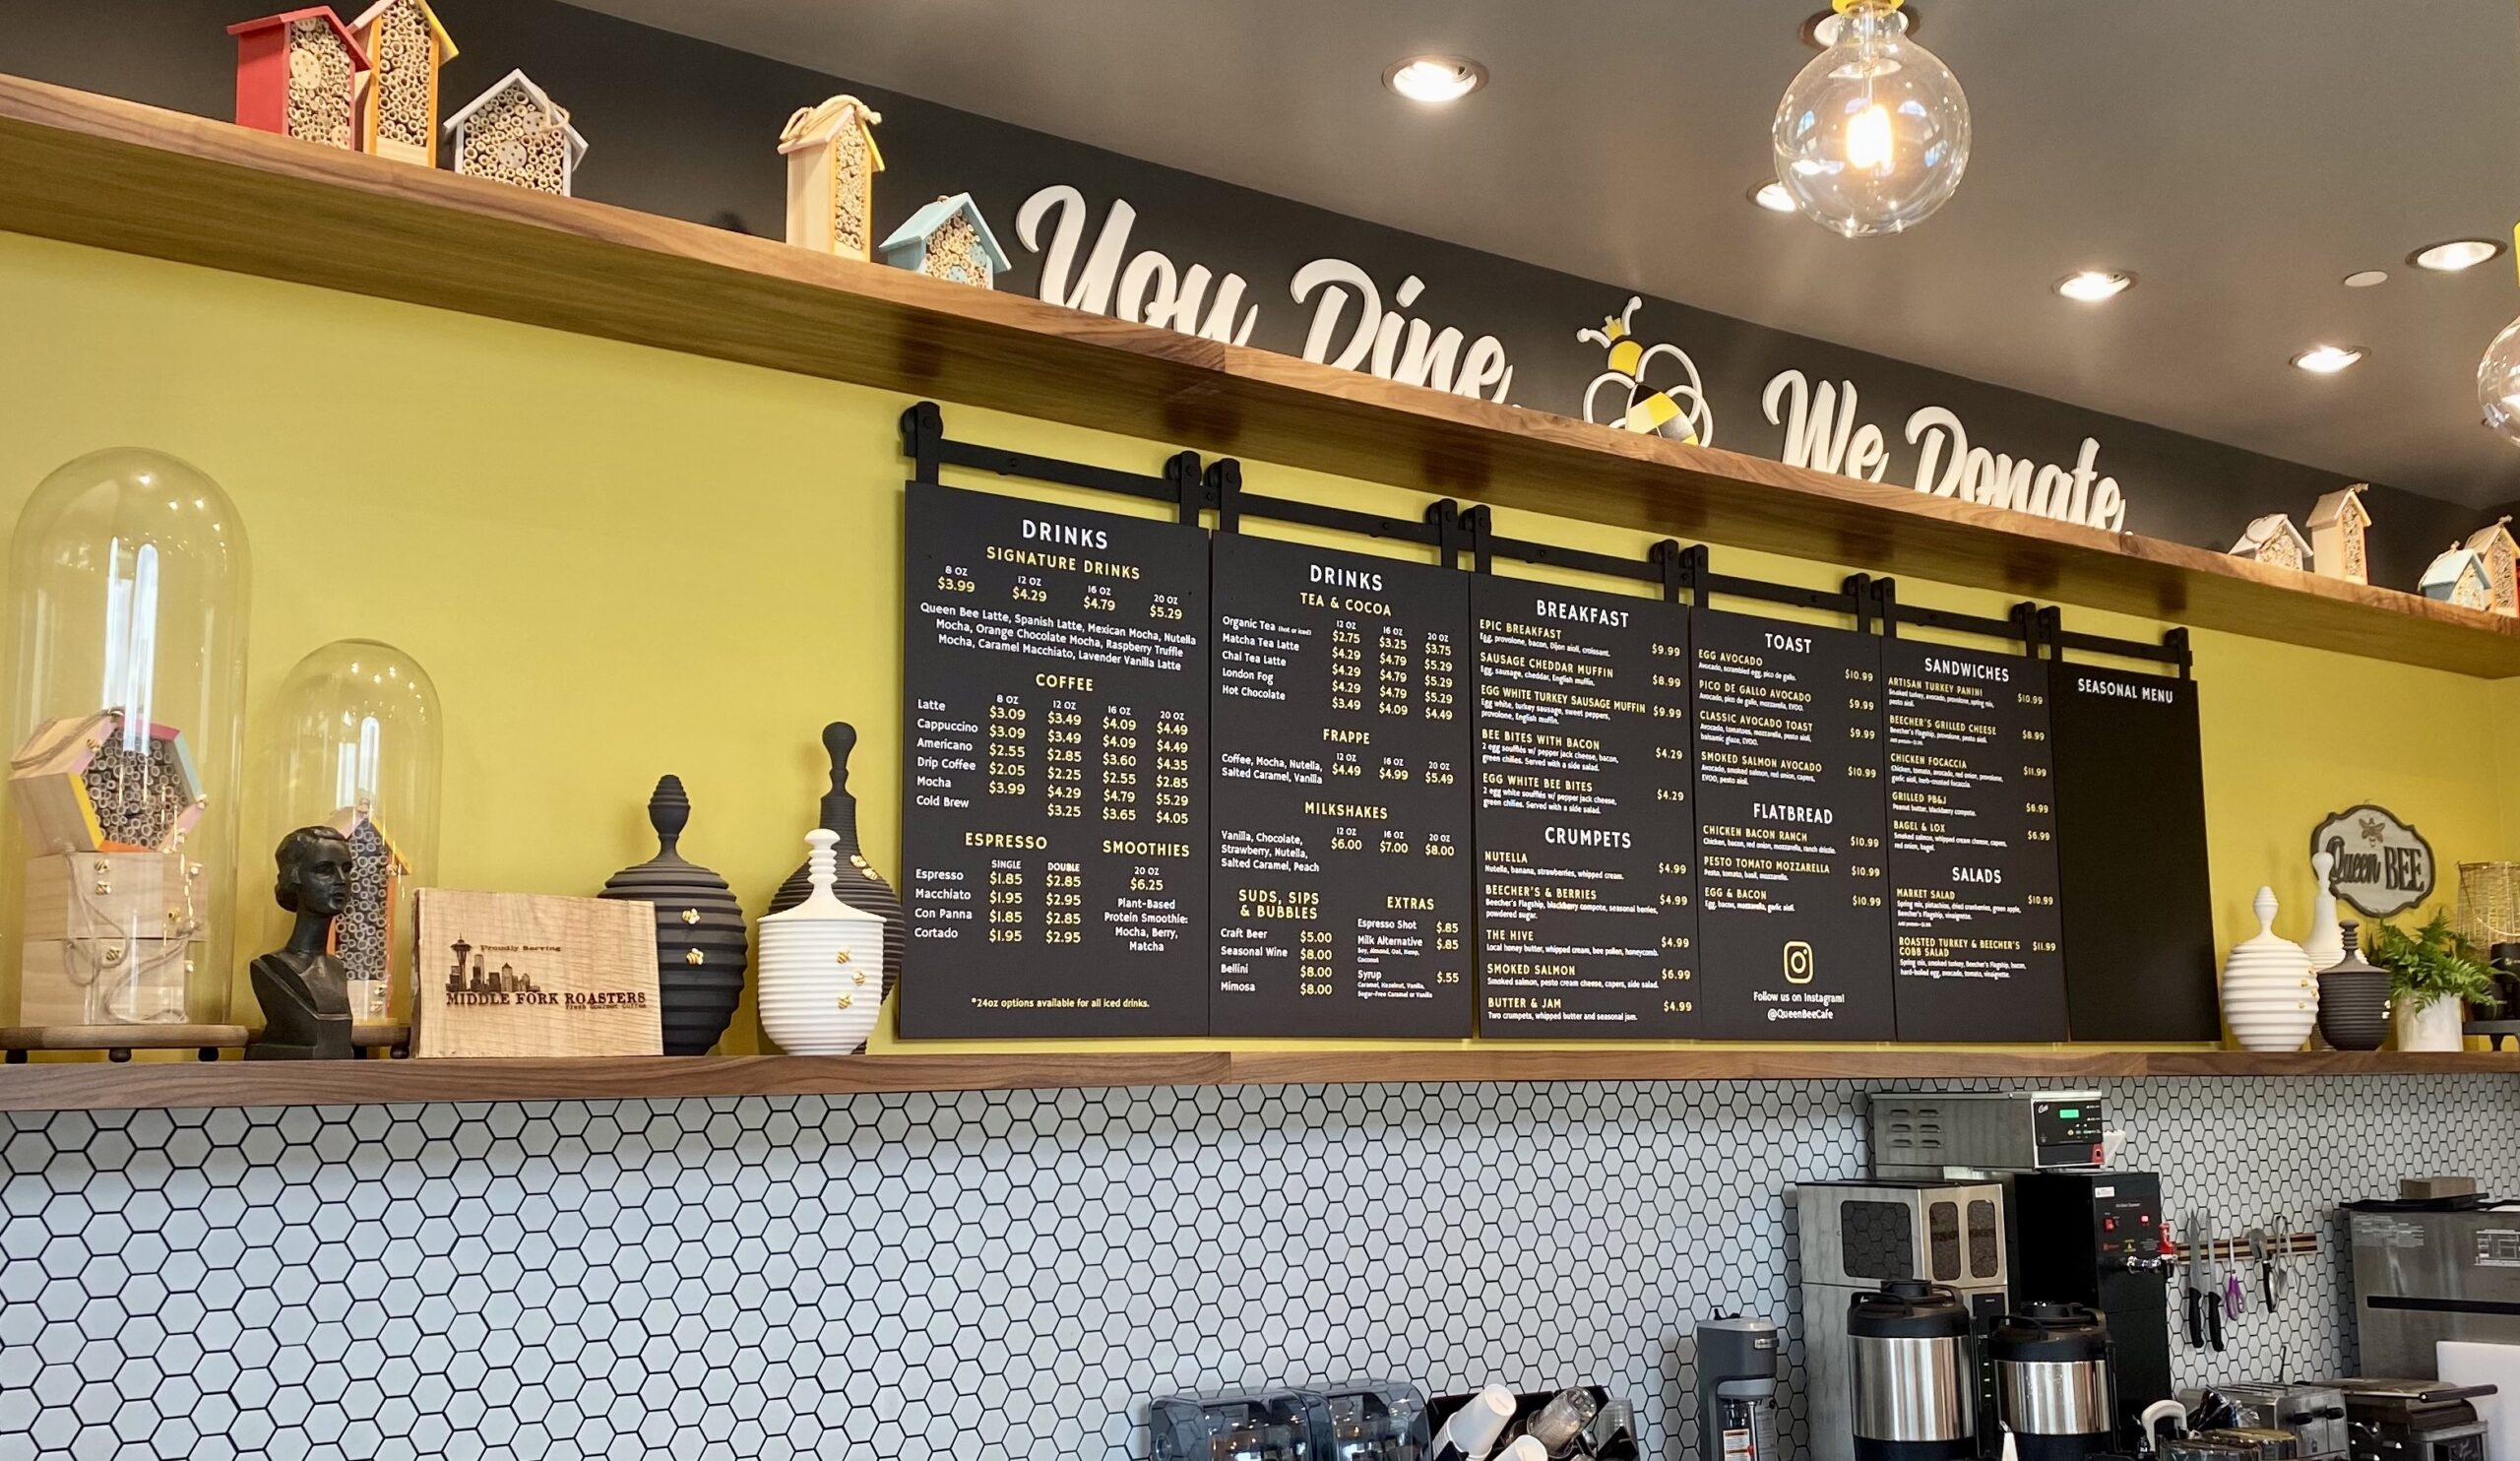 Queen Bee cafe menu board